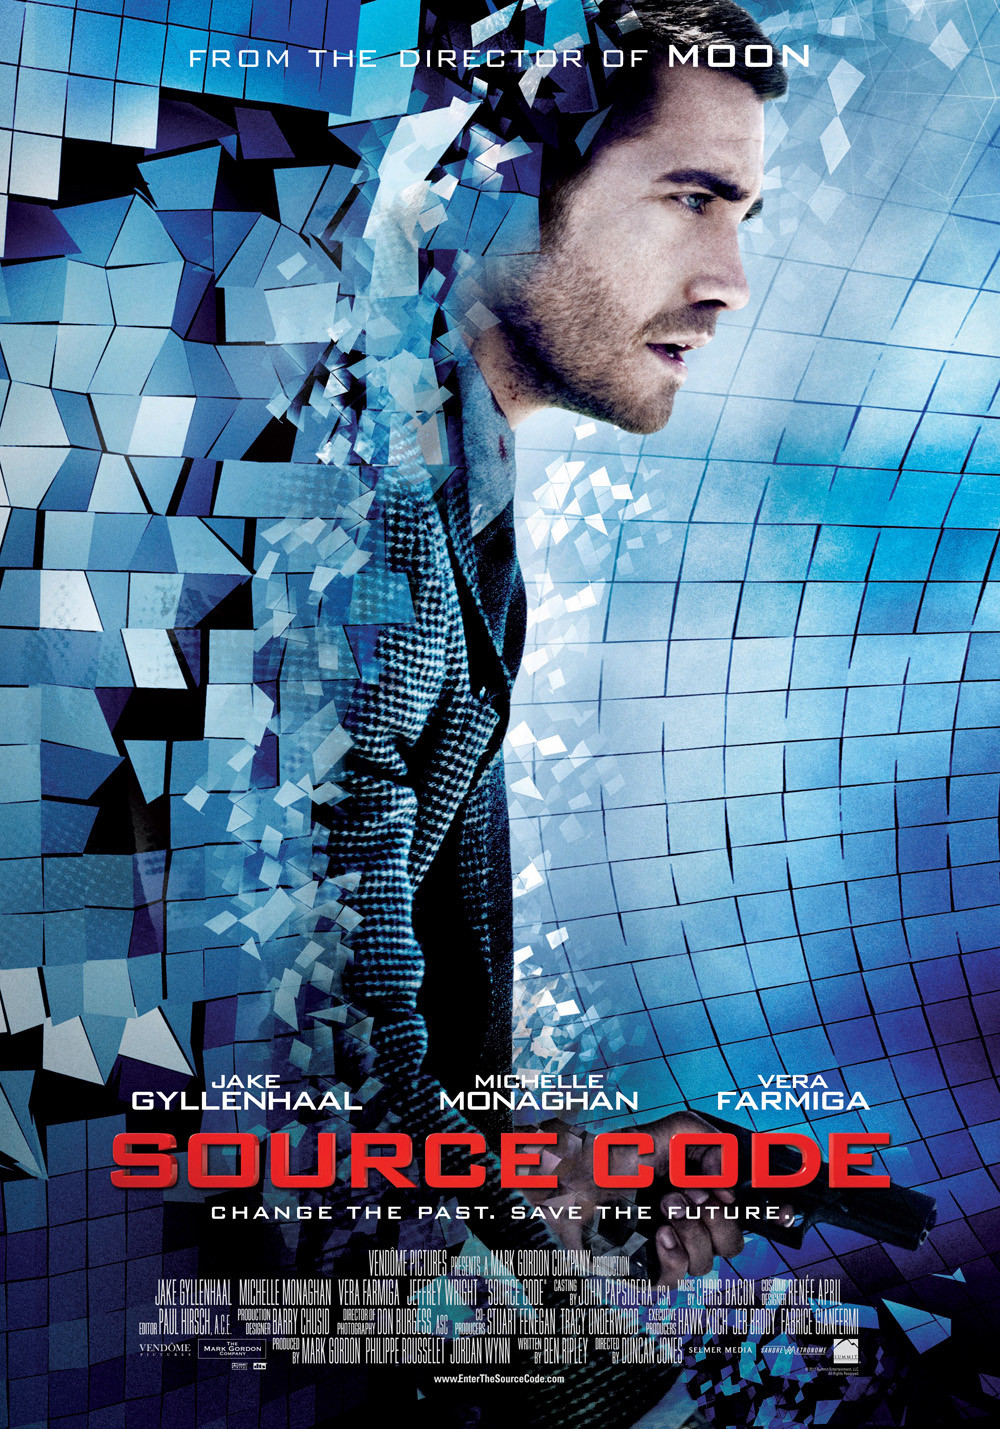 Stiahni si Filmy CZ/SK dabing Zdrojovy kod / Source Code (2011)(CZ)[1080p] = CSFD 80%